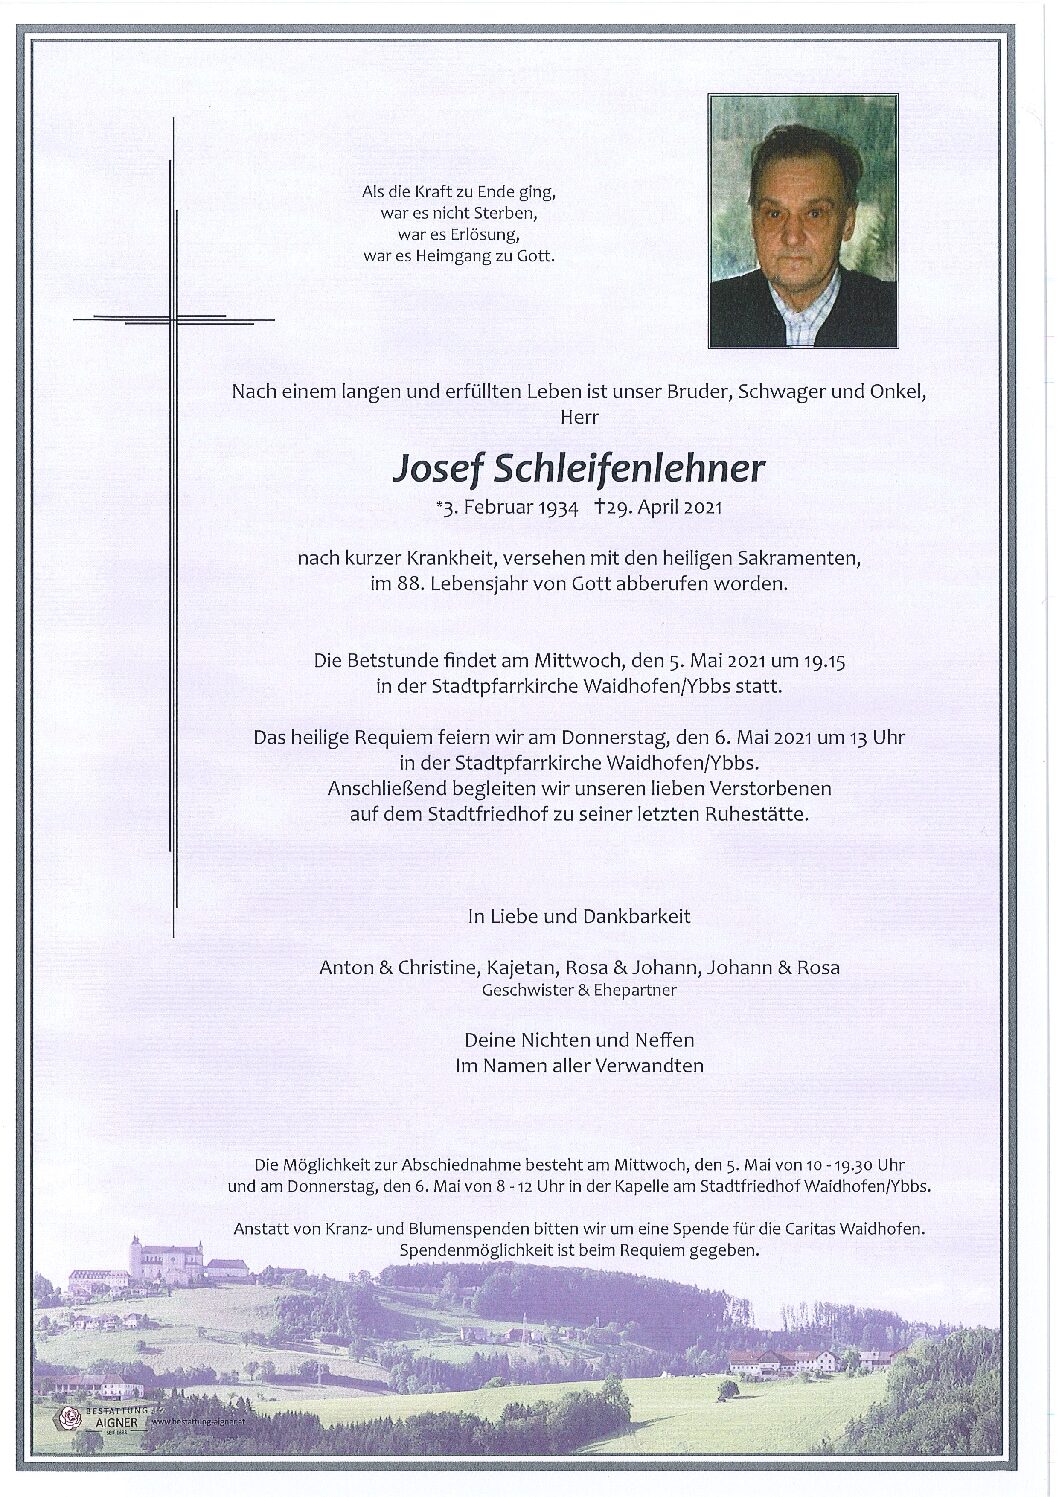 Josef Schleifenlehner